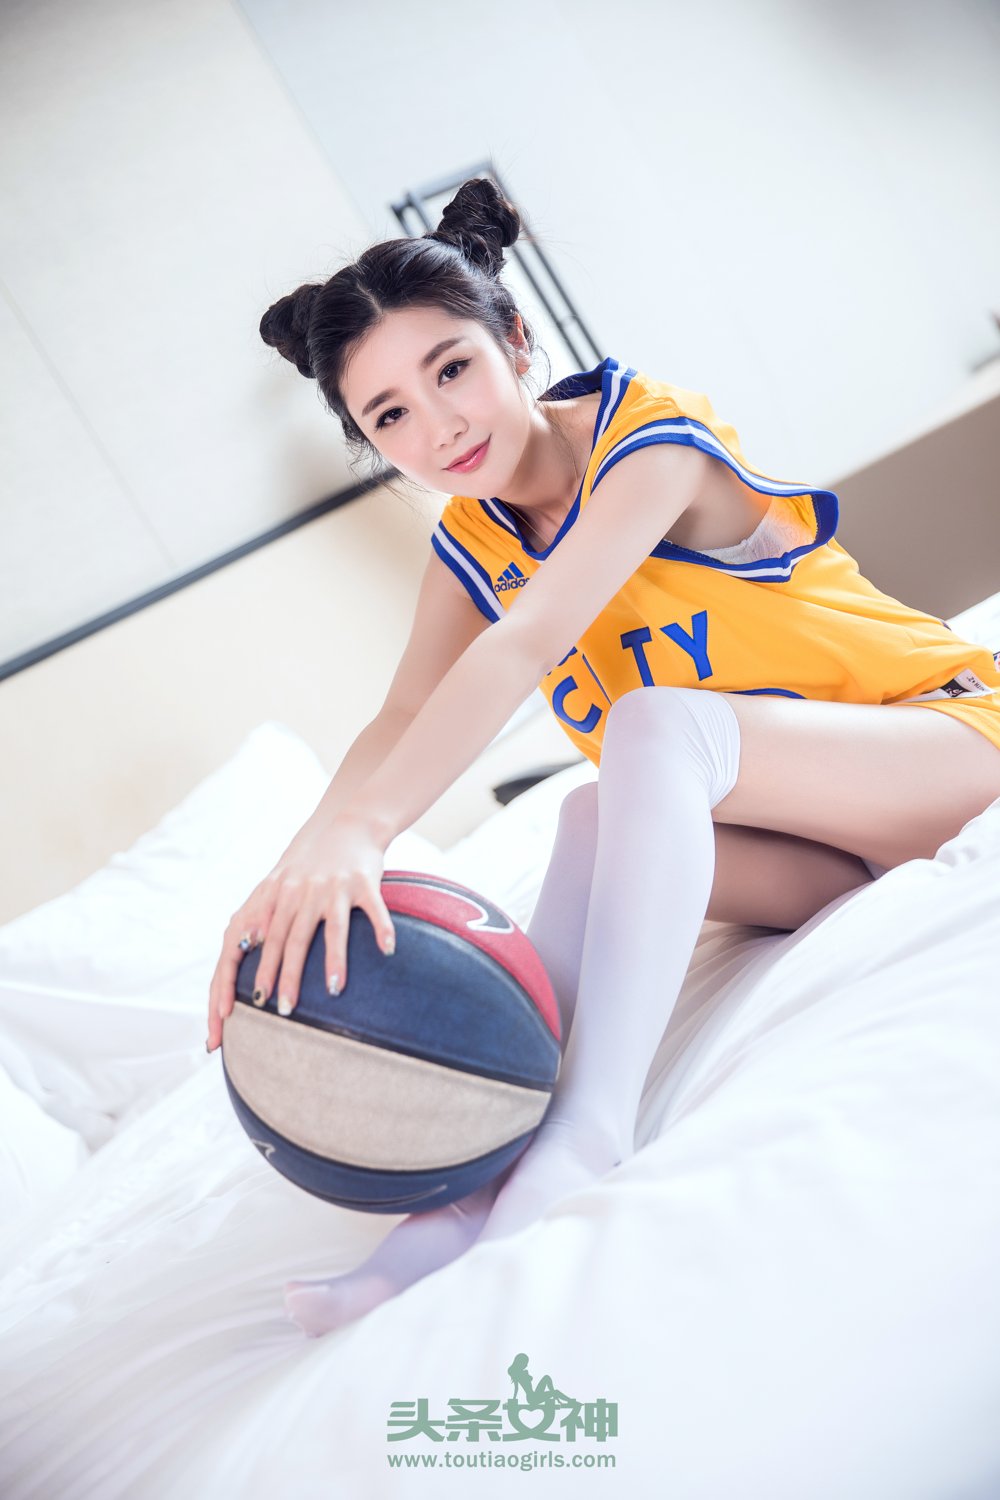 头条女神篮球宝贝苏凉库司令极品身材修长美腿私房写真